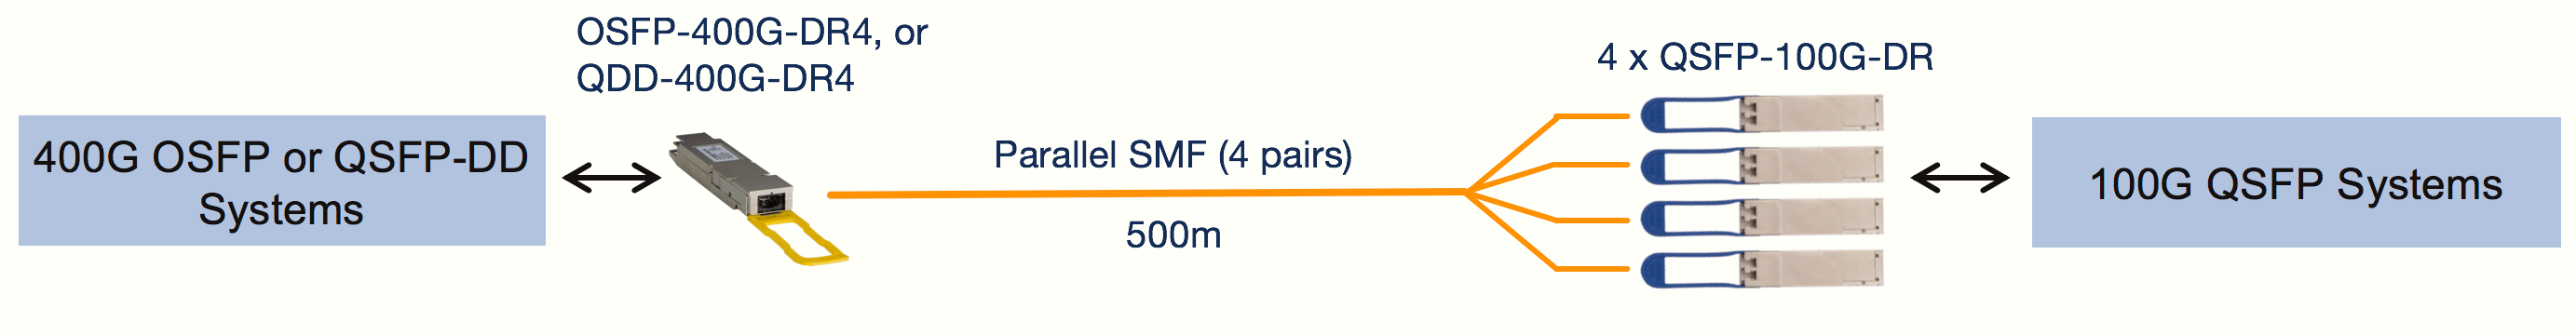 OSFP-400G-DR4 (または QDD-400G-DR4) から 4 x QSFP-100G-DR (500m SMF 経由)